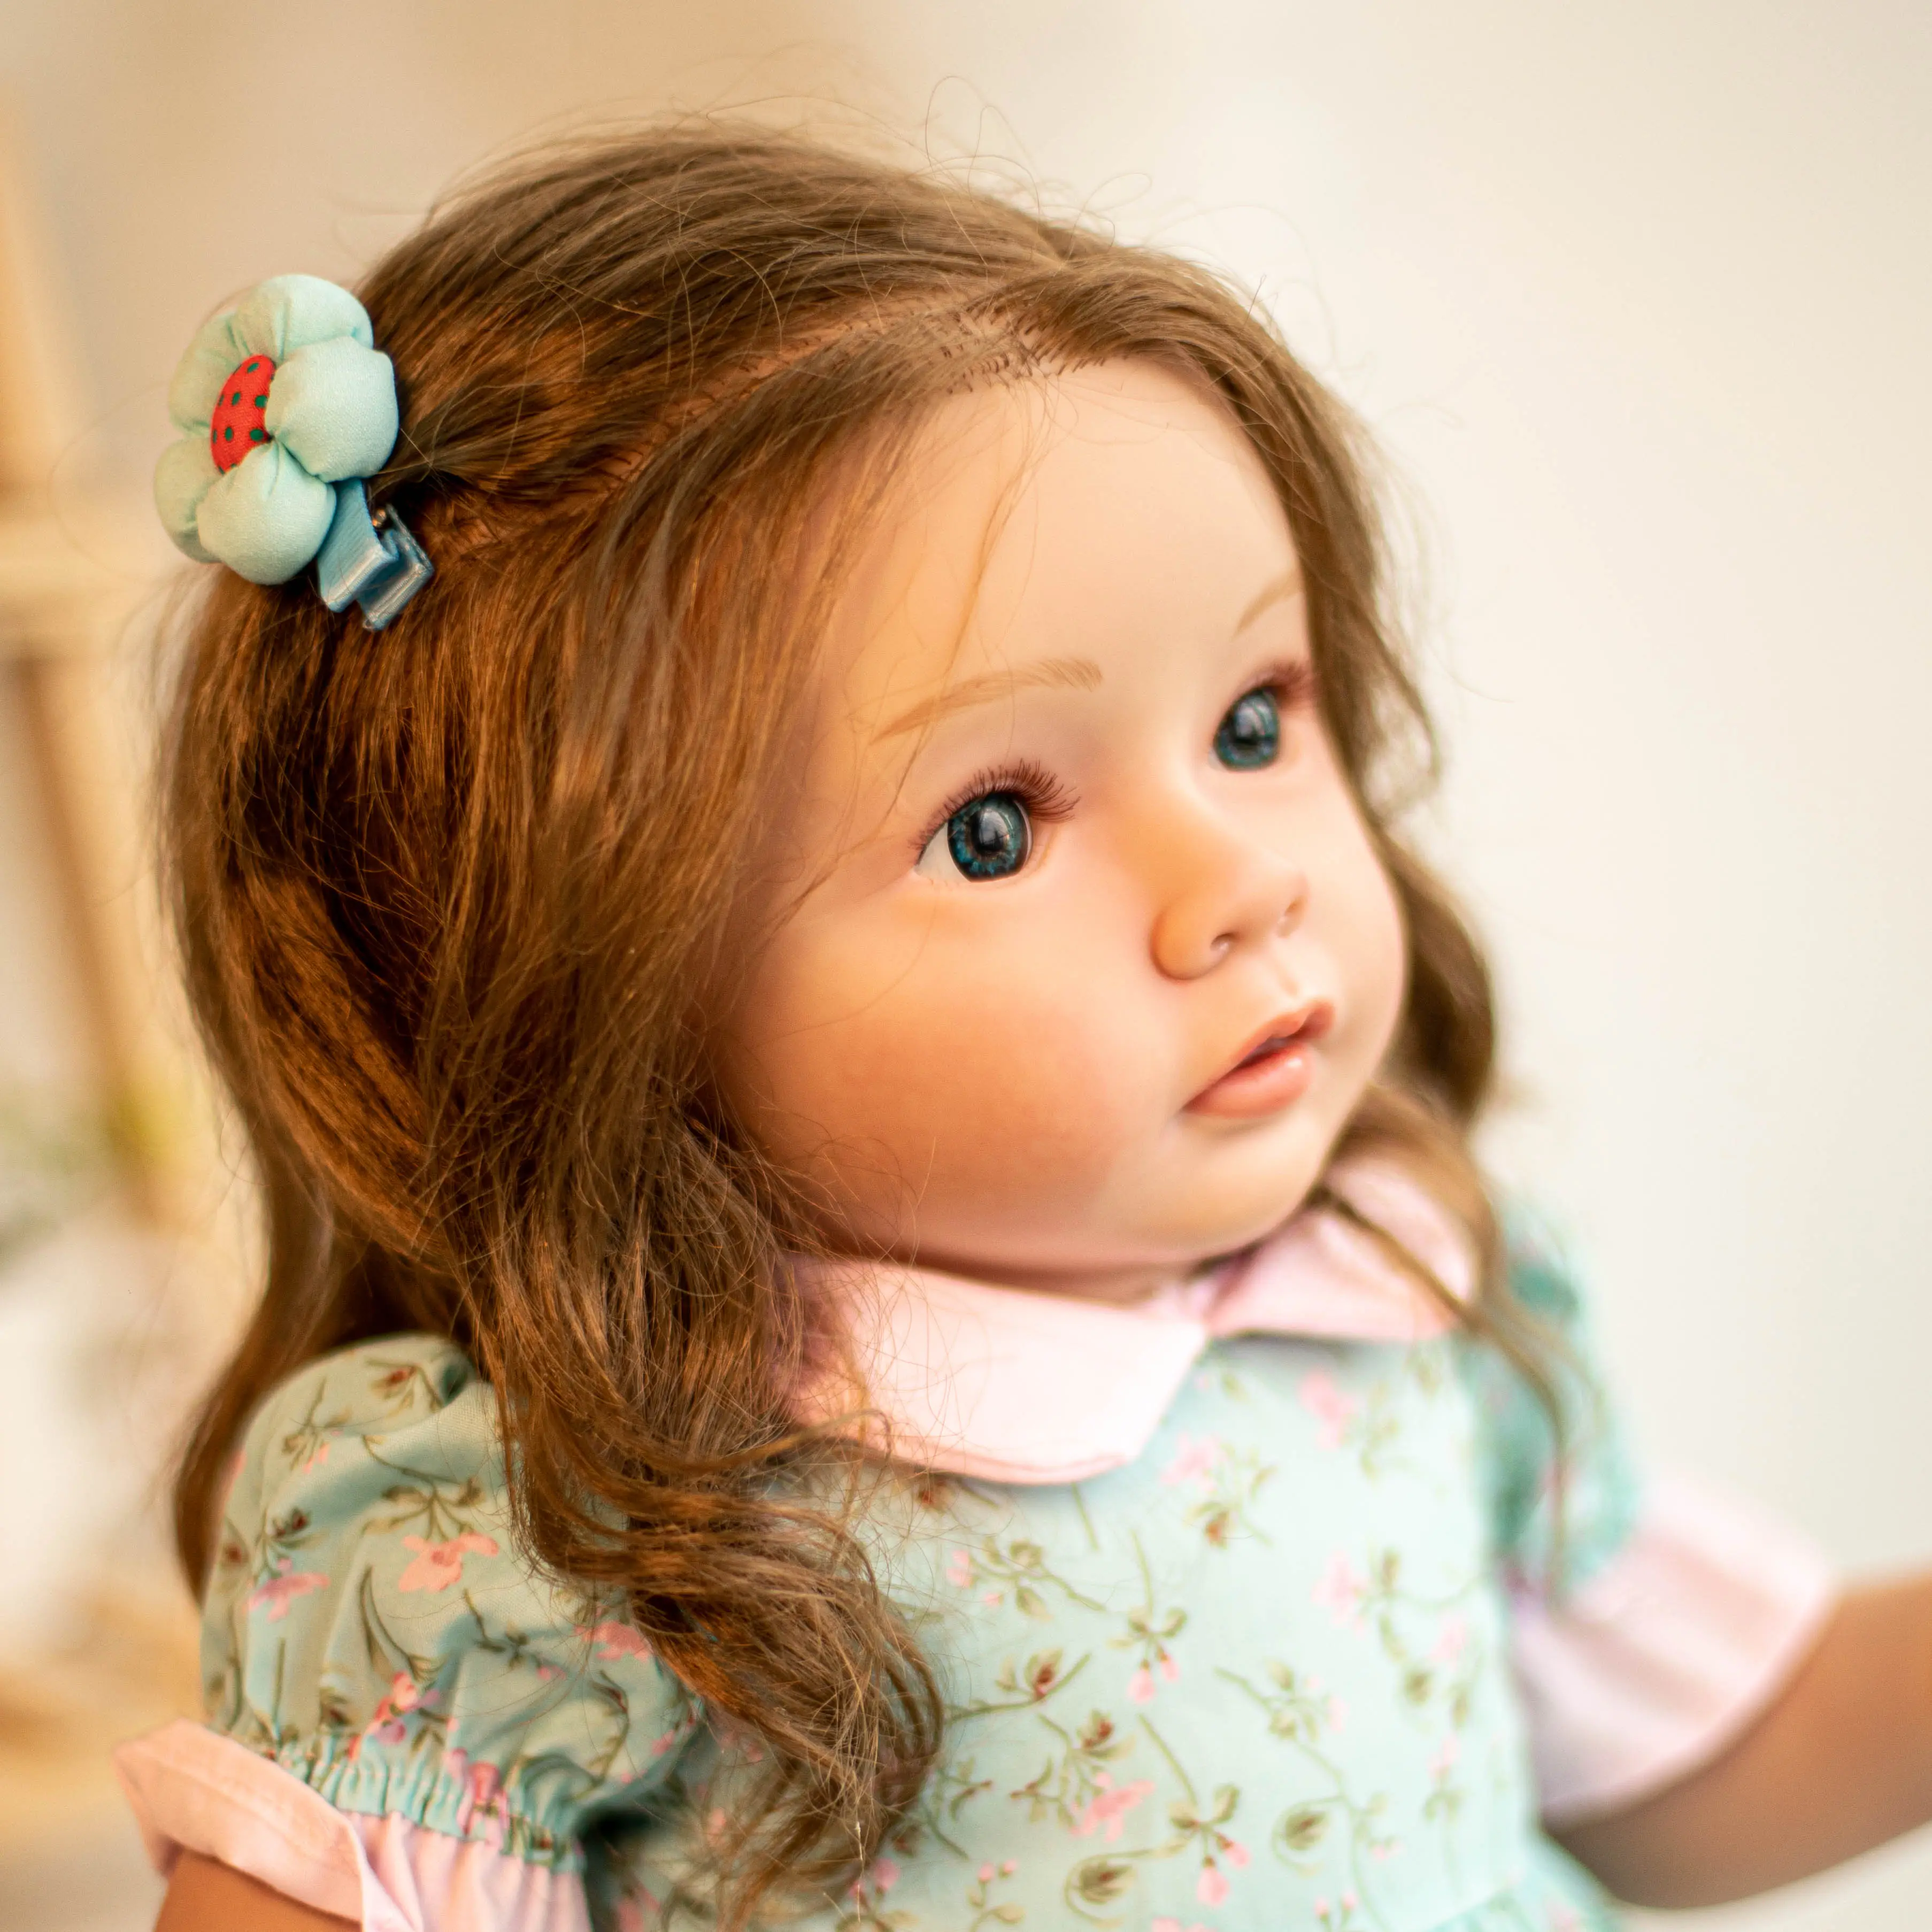 ベビーサイドリアルな生まれ変わった赤ちゃん人形ソフトボディリアルな全身リアルライフ人形巨大な幼児人形赤ちゃん生まれ変わった